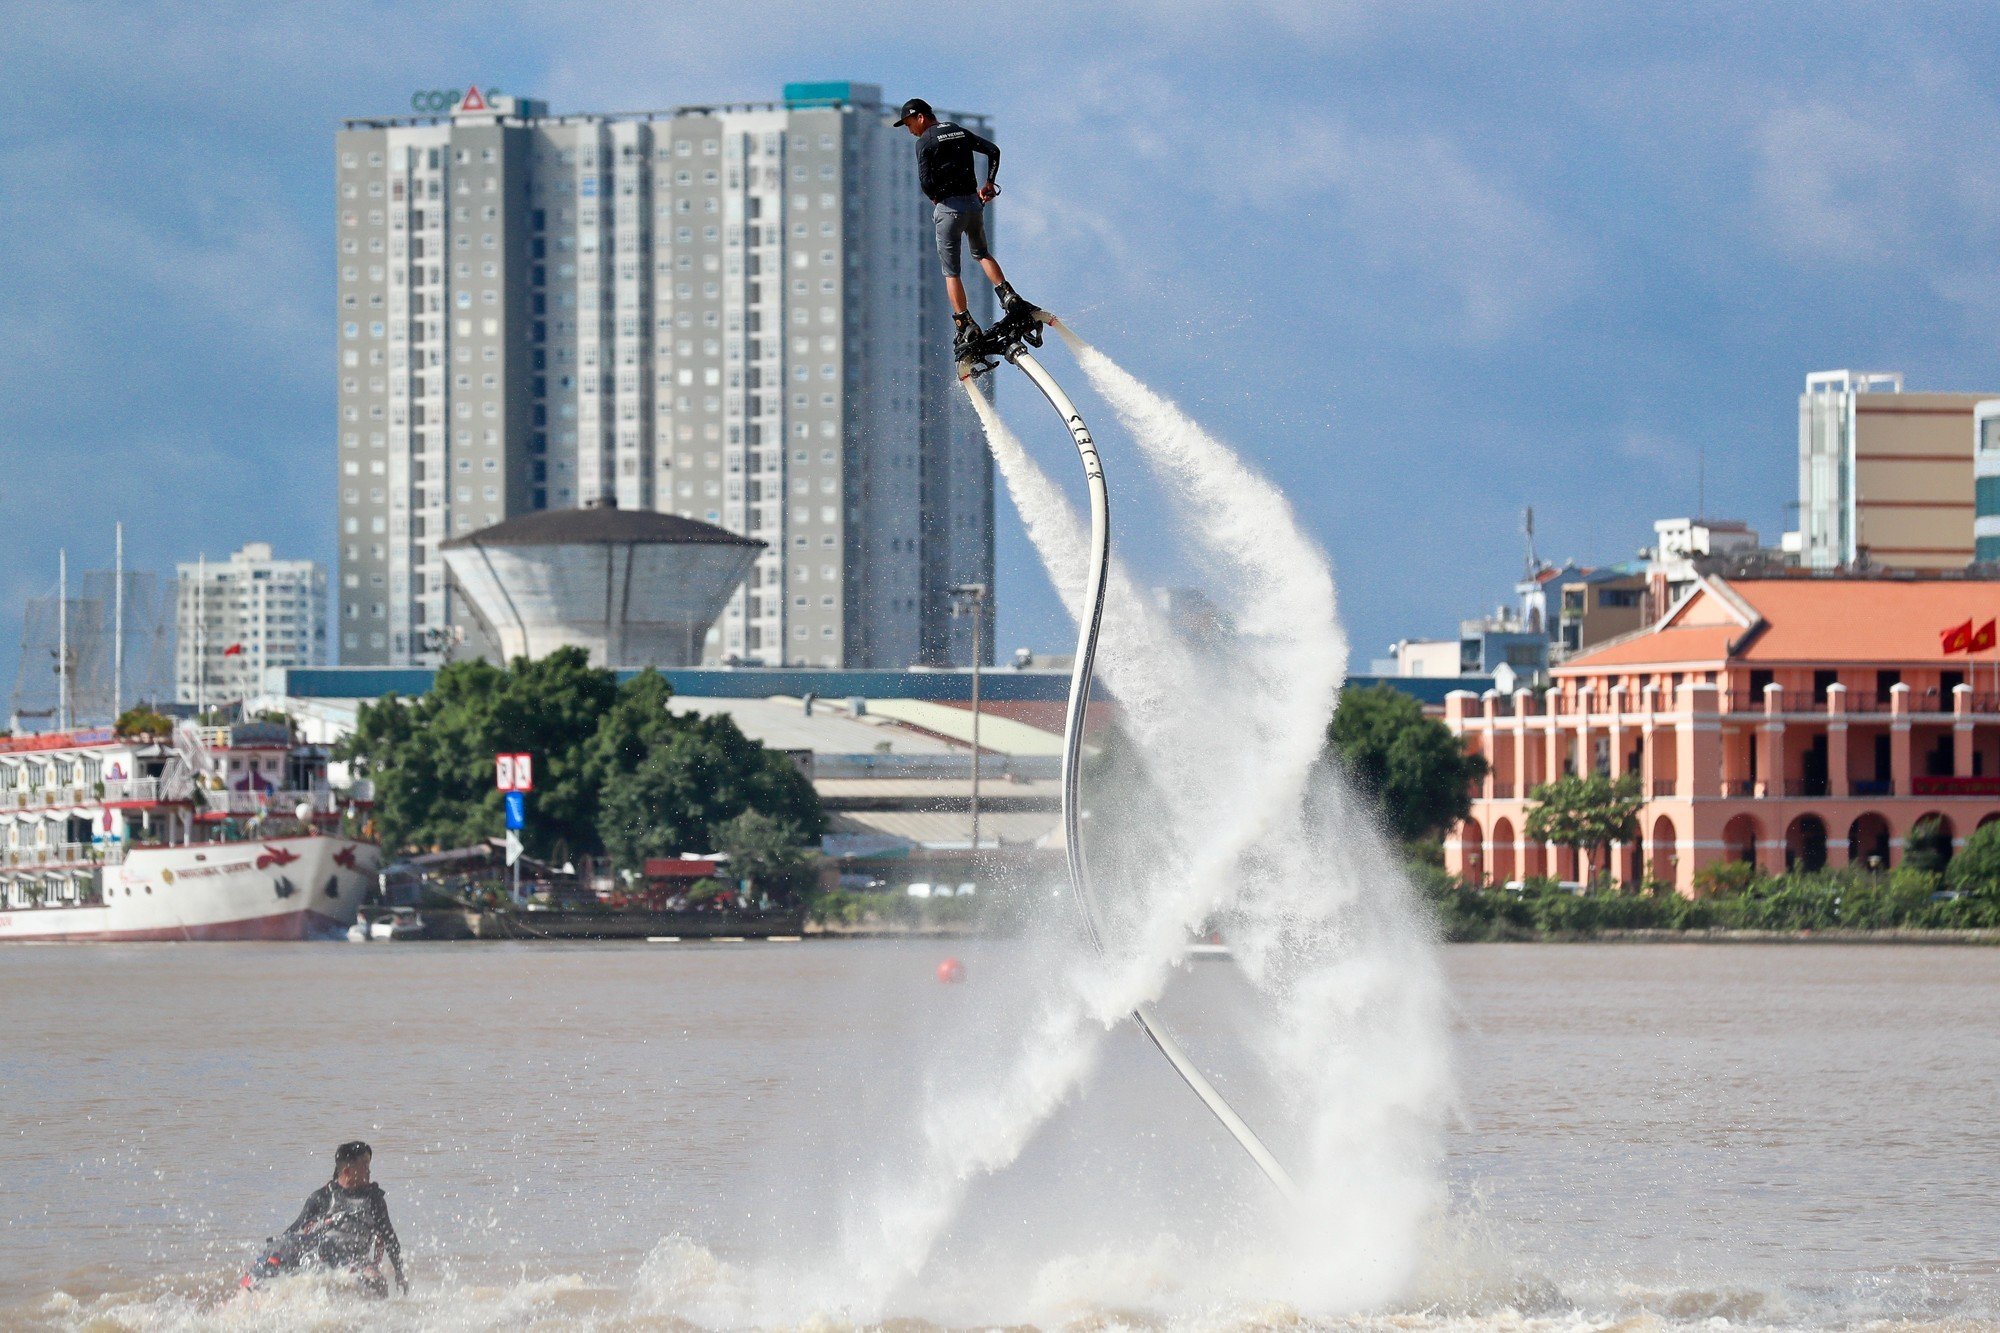 Sông Sài Gòn dậy sóng với giải đua thuyền truyền thống và trình diễn thể thao sông nước - Ảnh 6.